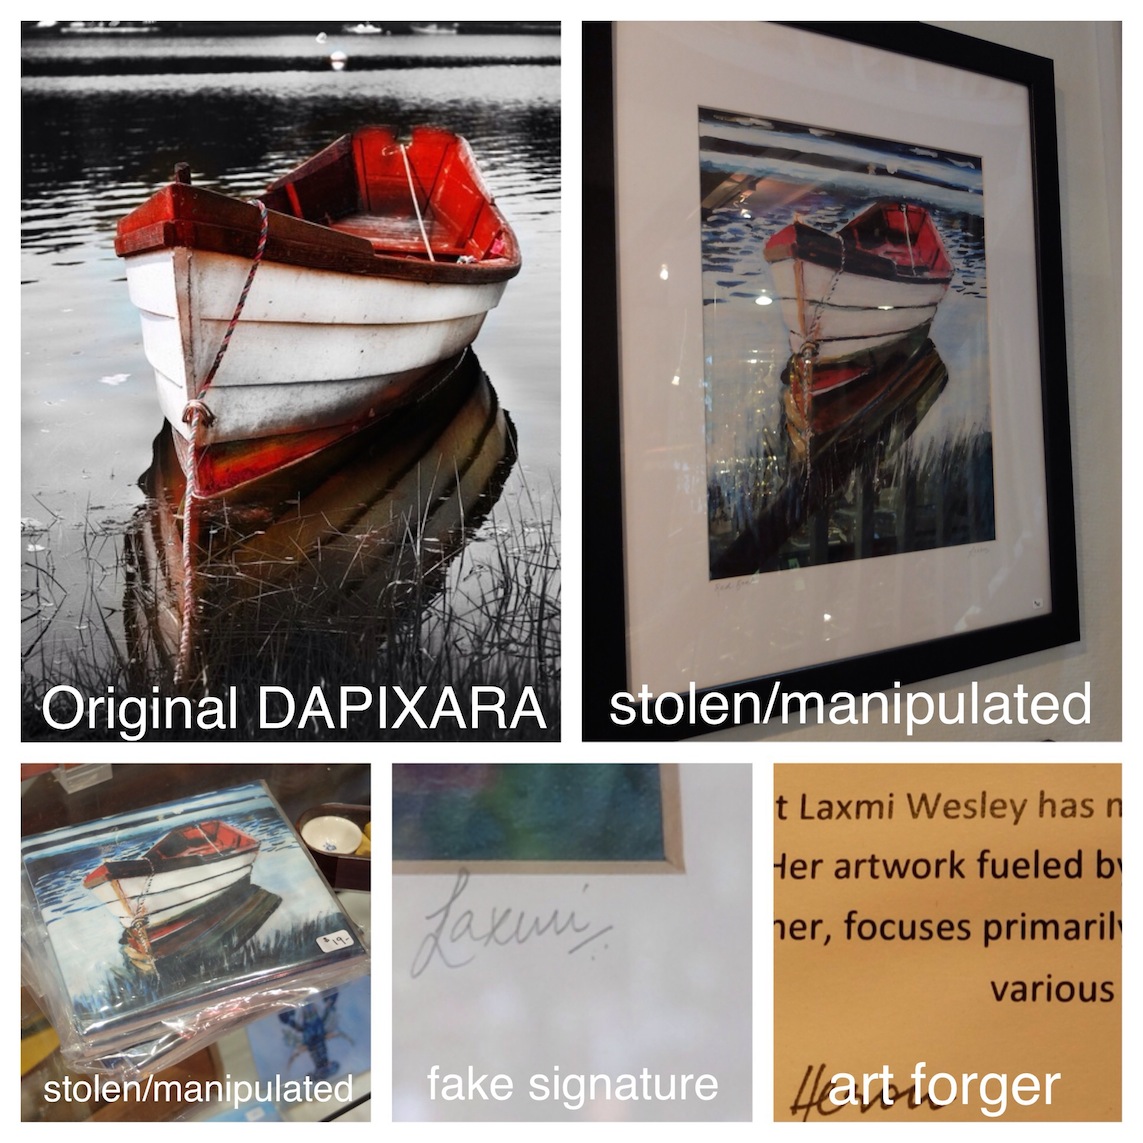 Stolen Dapixara Red Boat Artwork Found In Wellfleet Gallery. Artwork stolen by forger copycat Laxmi Wesley in Wellfleet, Massachusetts